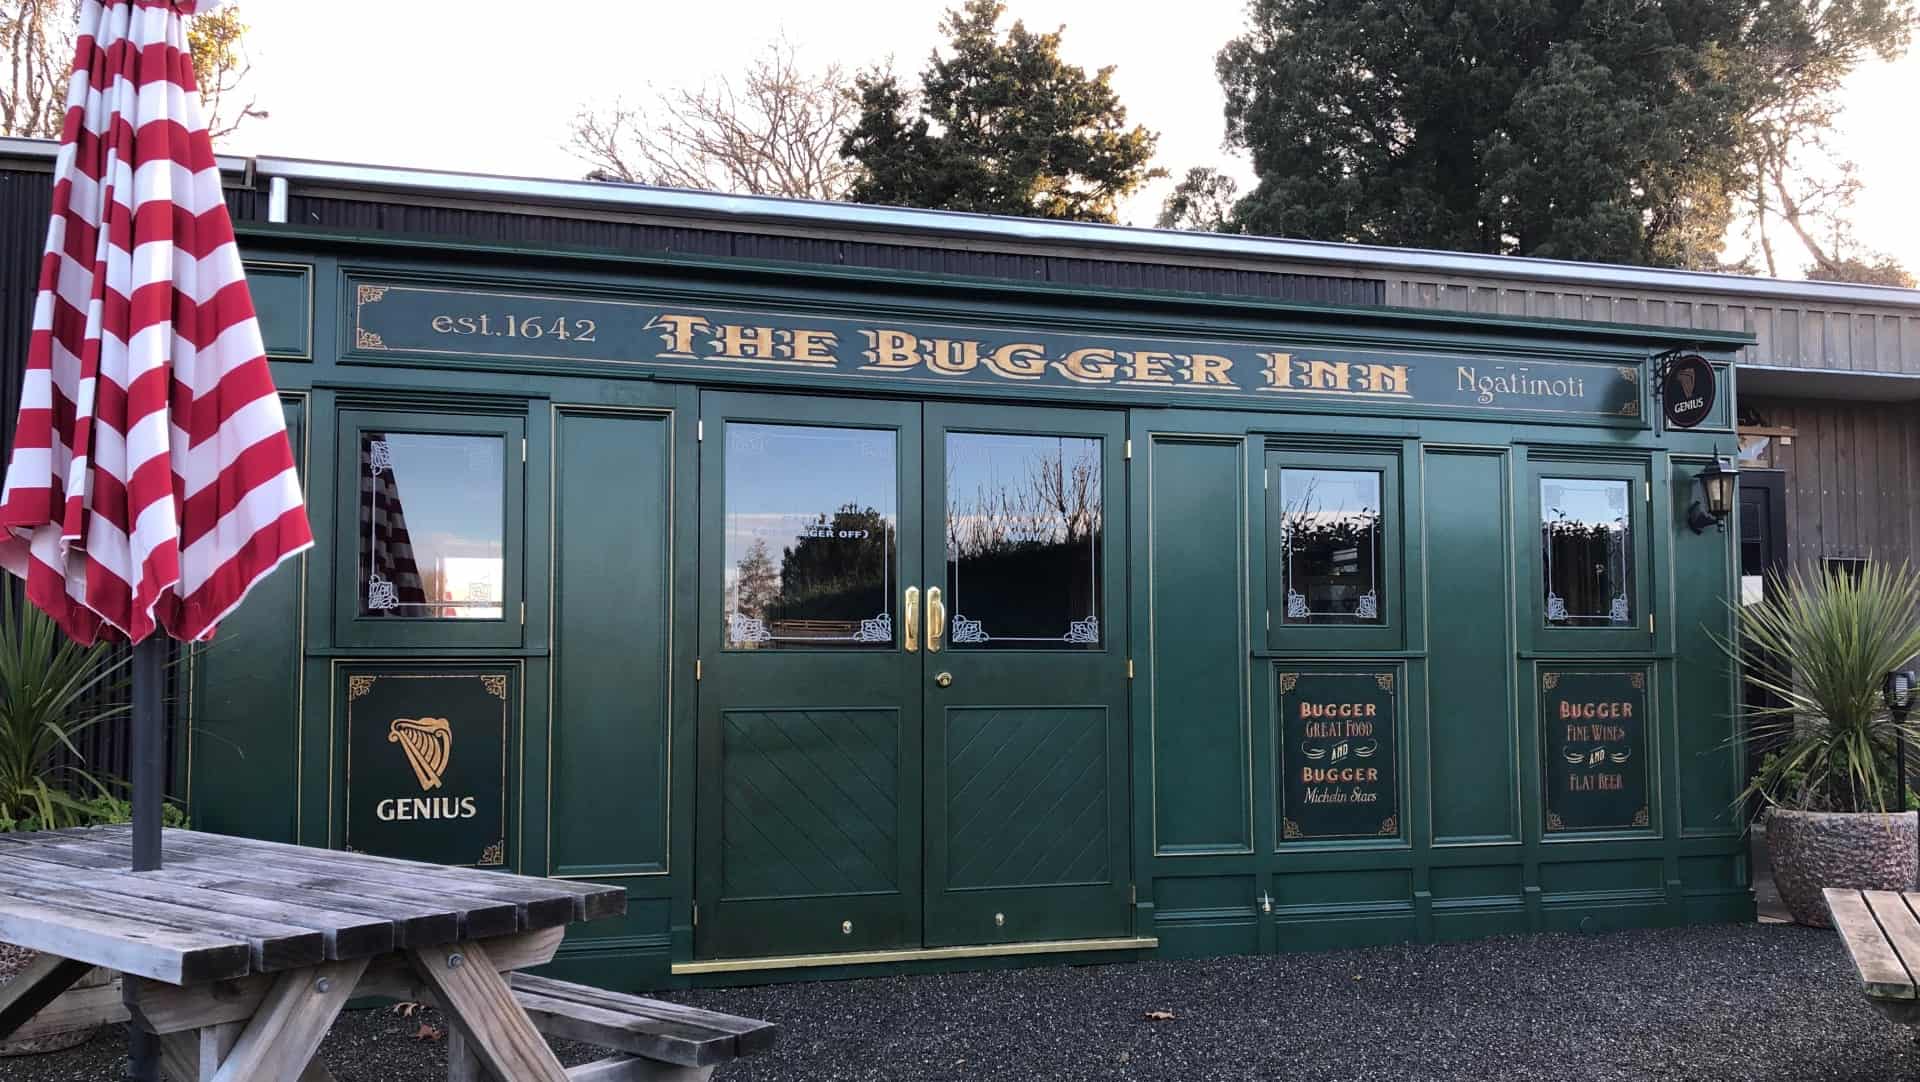 The Bugger Inn